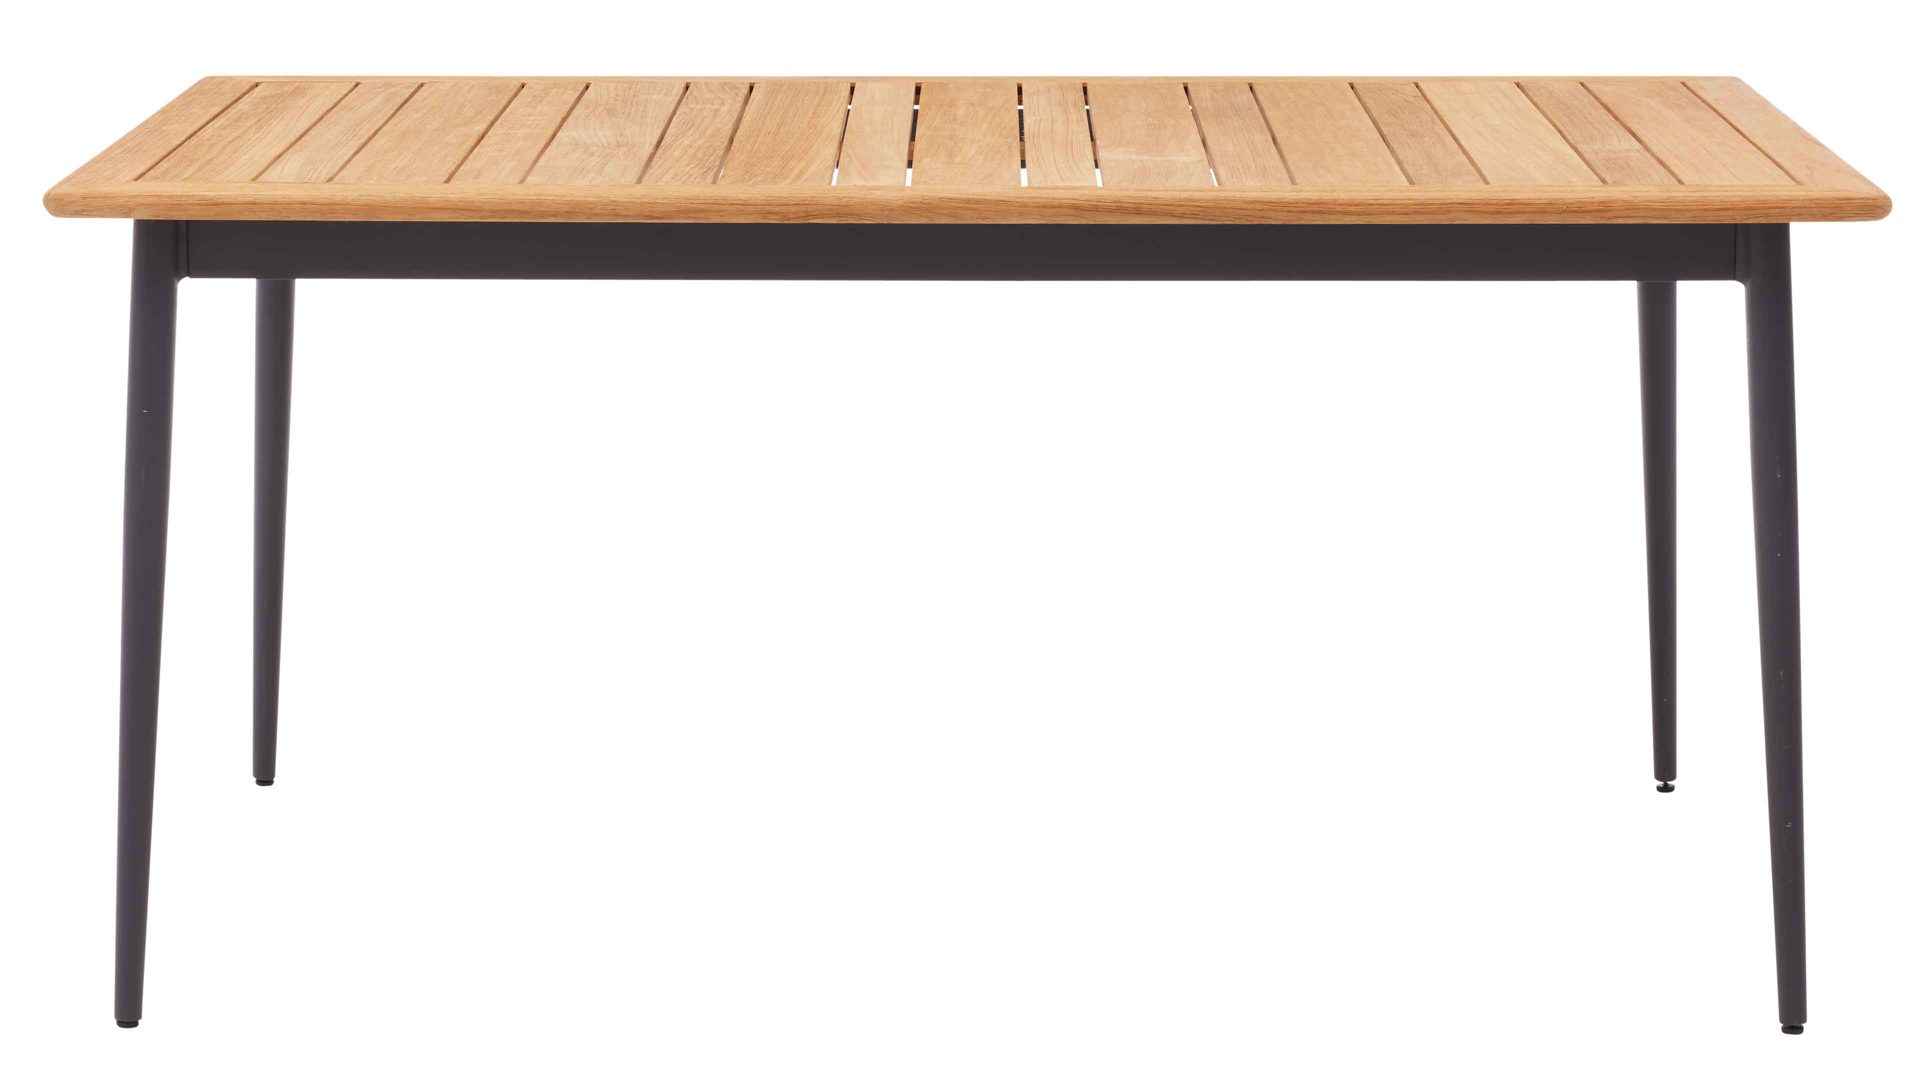 Gartentisch Interliving aus Holz in Holzfarben Interliving Gartenmöbel Serie 7001 – Tisch Teakholz & Aluminium - ca. 220 x 95 cm